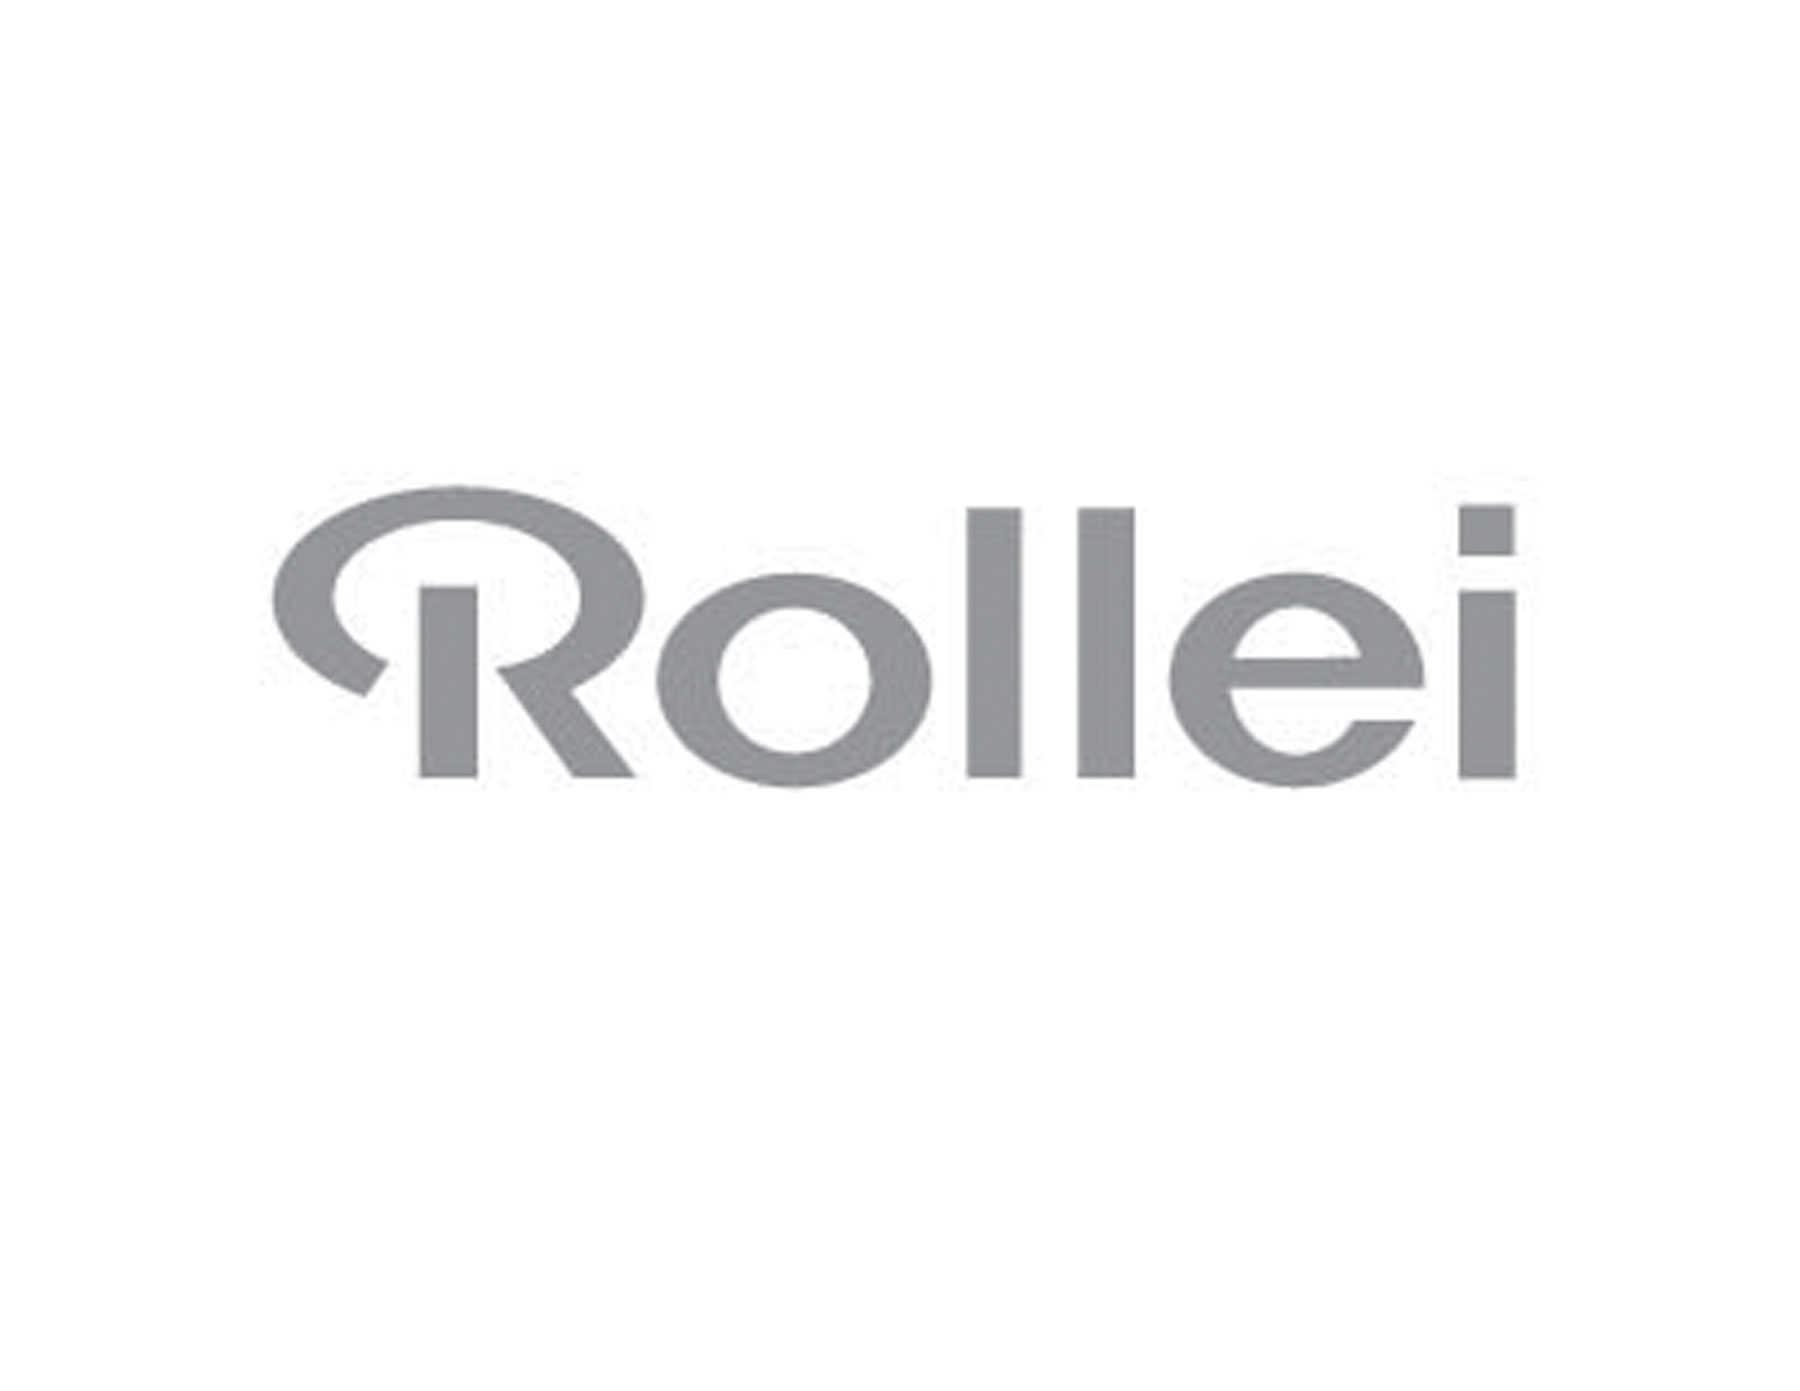 Rollei纸业公司标志设计运用了高端灰为主色系